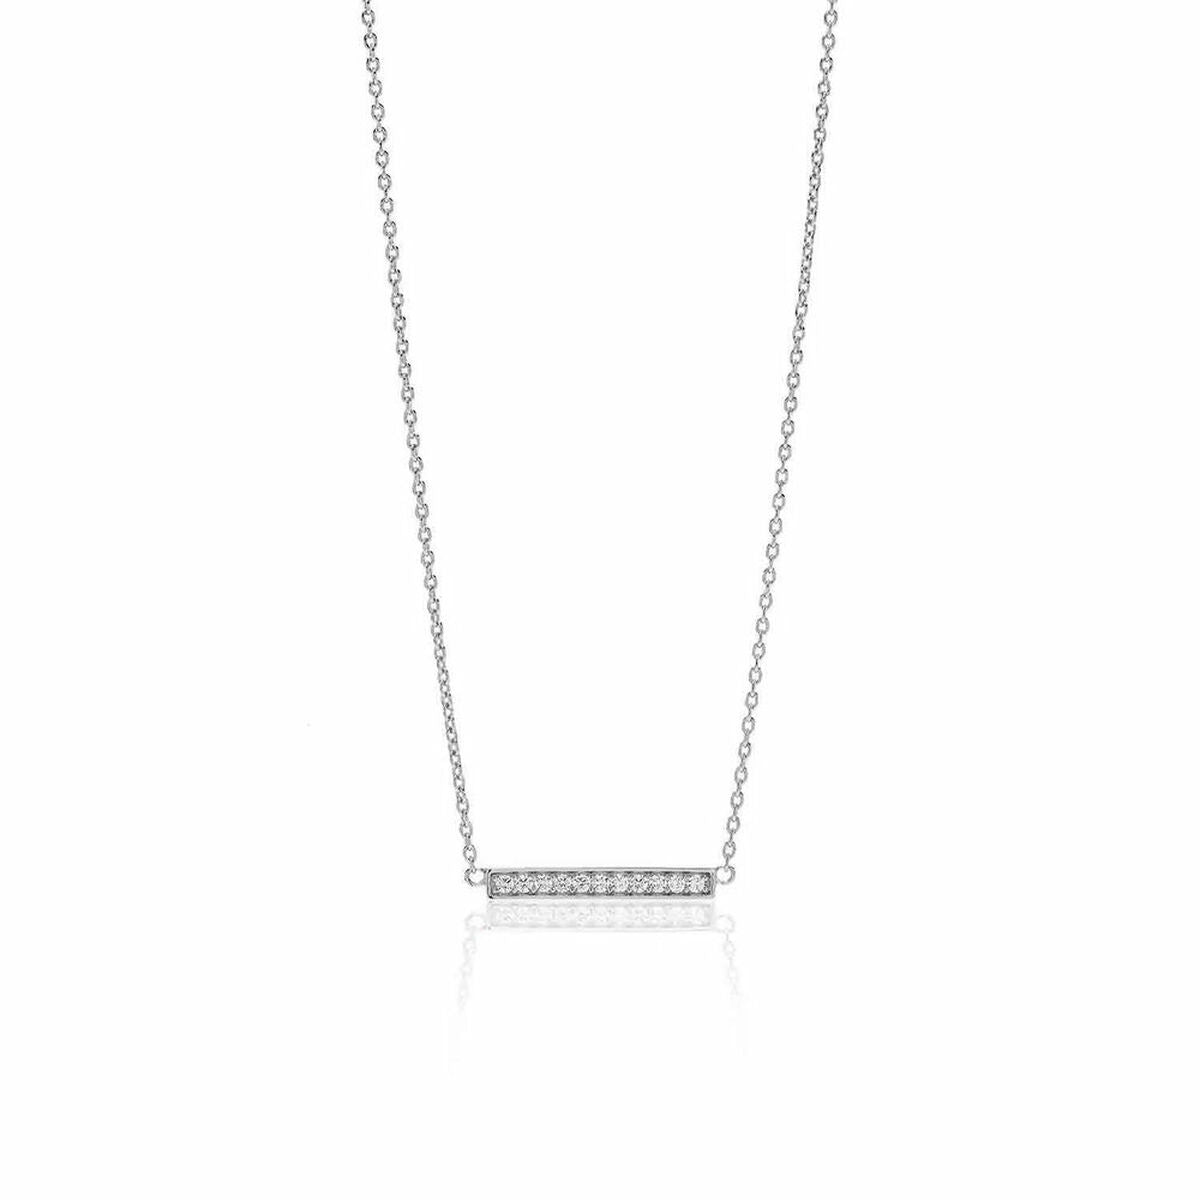 Ladies'Necklace Sif Jakobs C1011-CZ (38 cm)